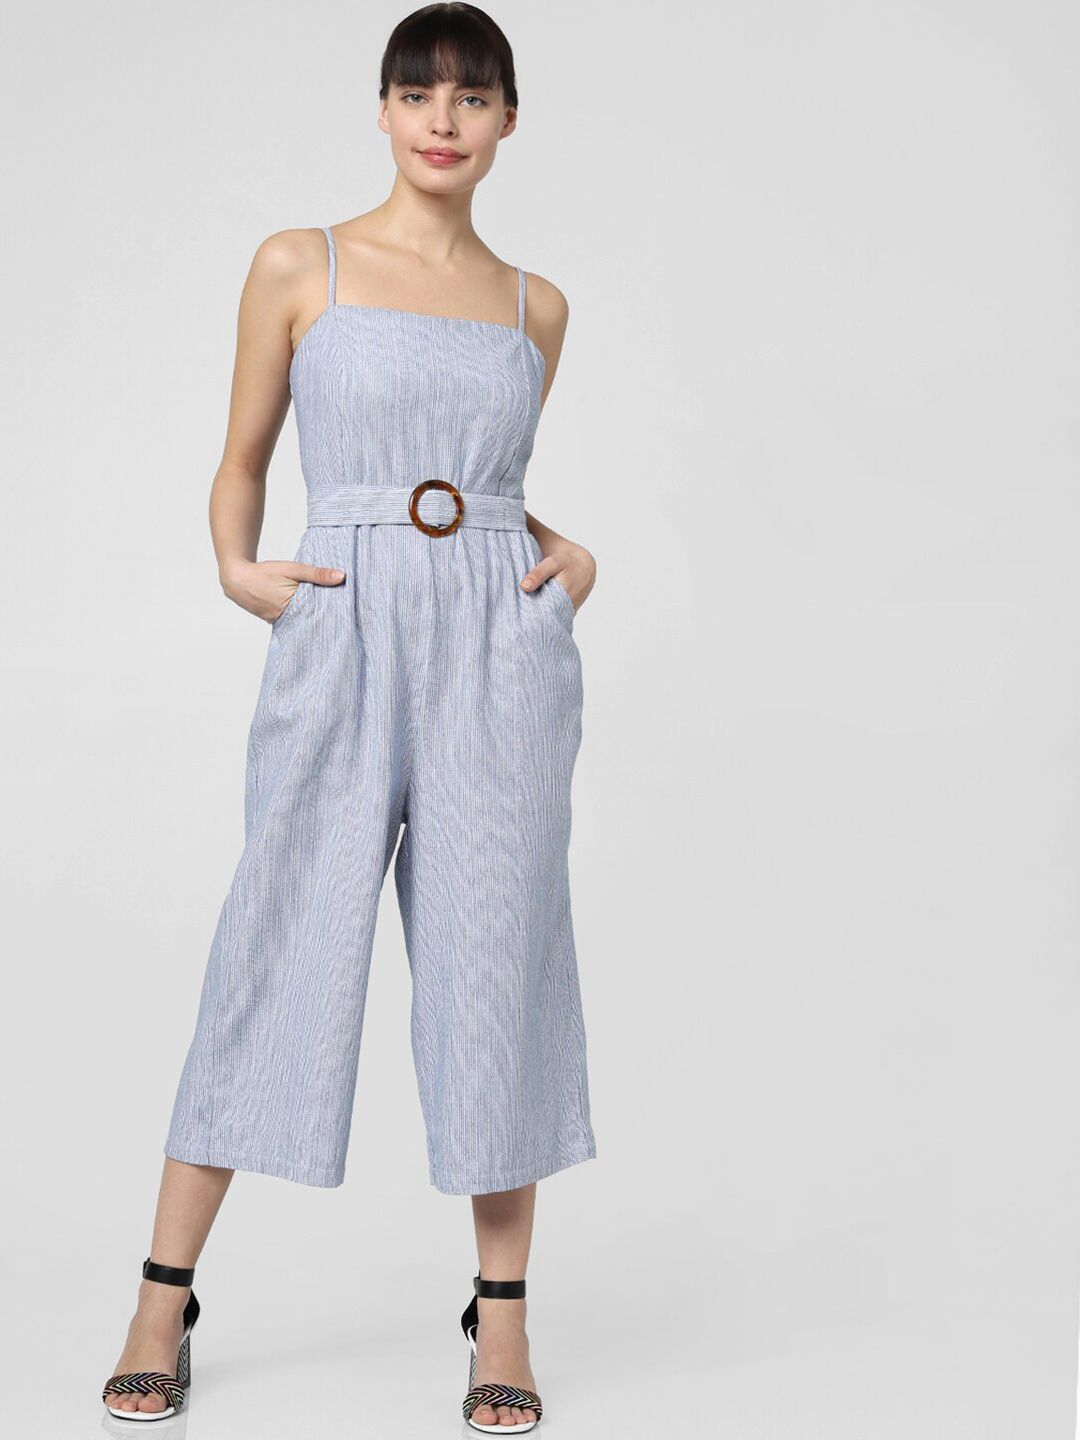 Vero Moda Blue & White Striped Cotton Capri Jumpsuit Price in India